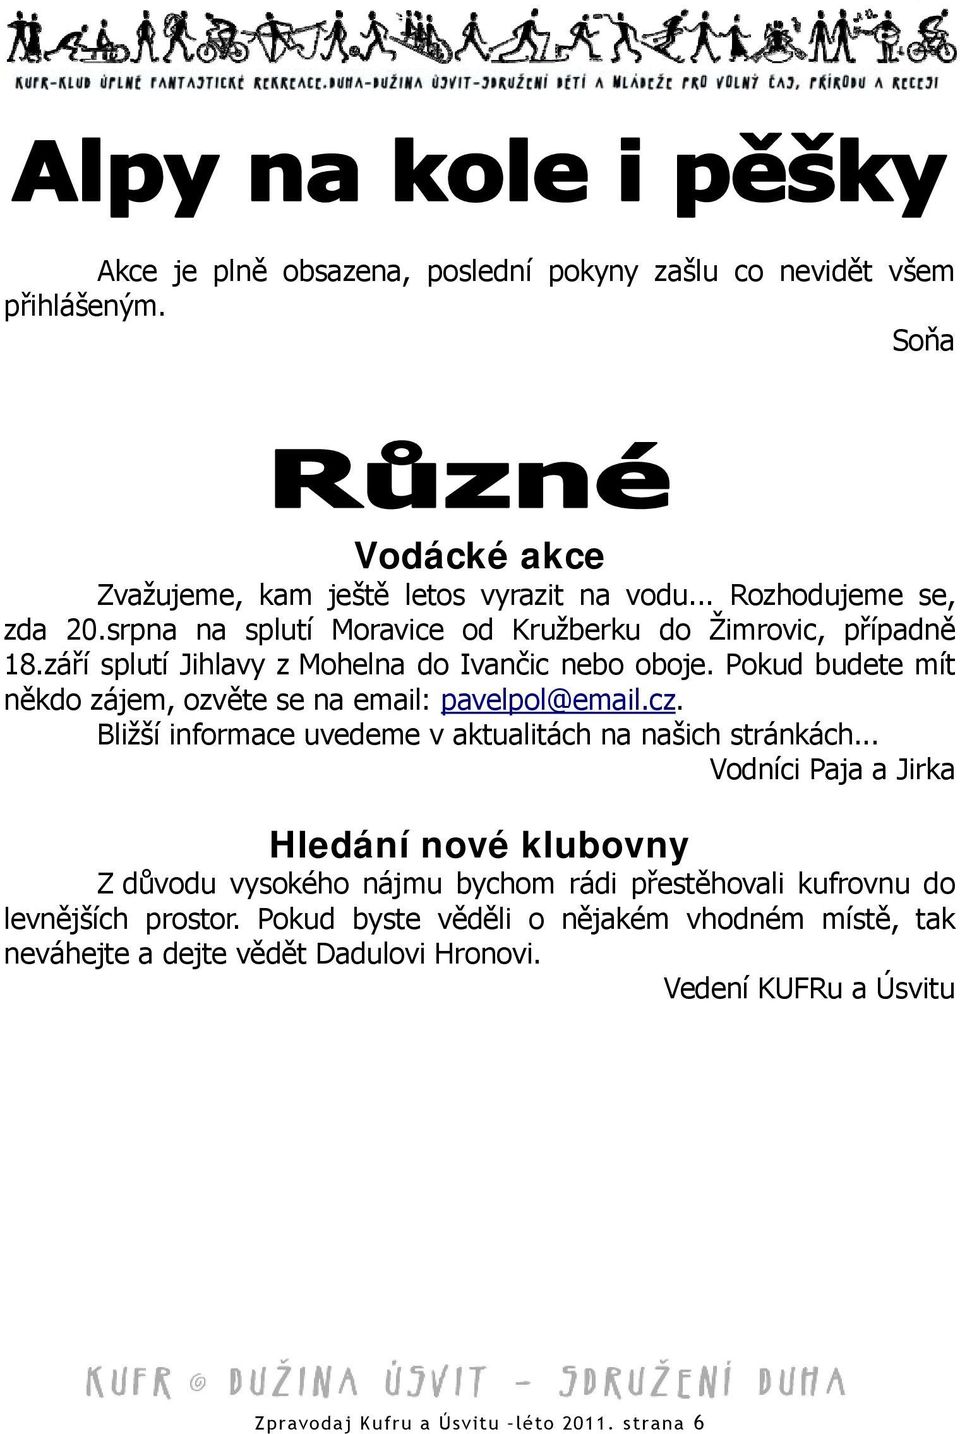 Pokud budete mít někdo zájem, ozvěte se na email: pavelpol@email.cz. Bližší informace uvedeme v aktualitách na našich stránkách.